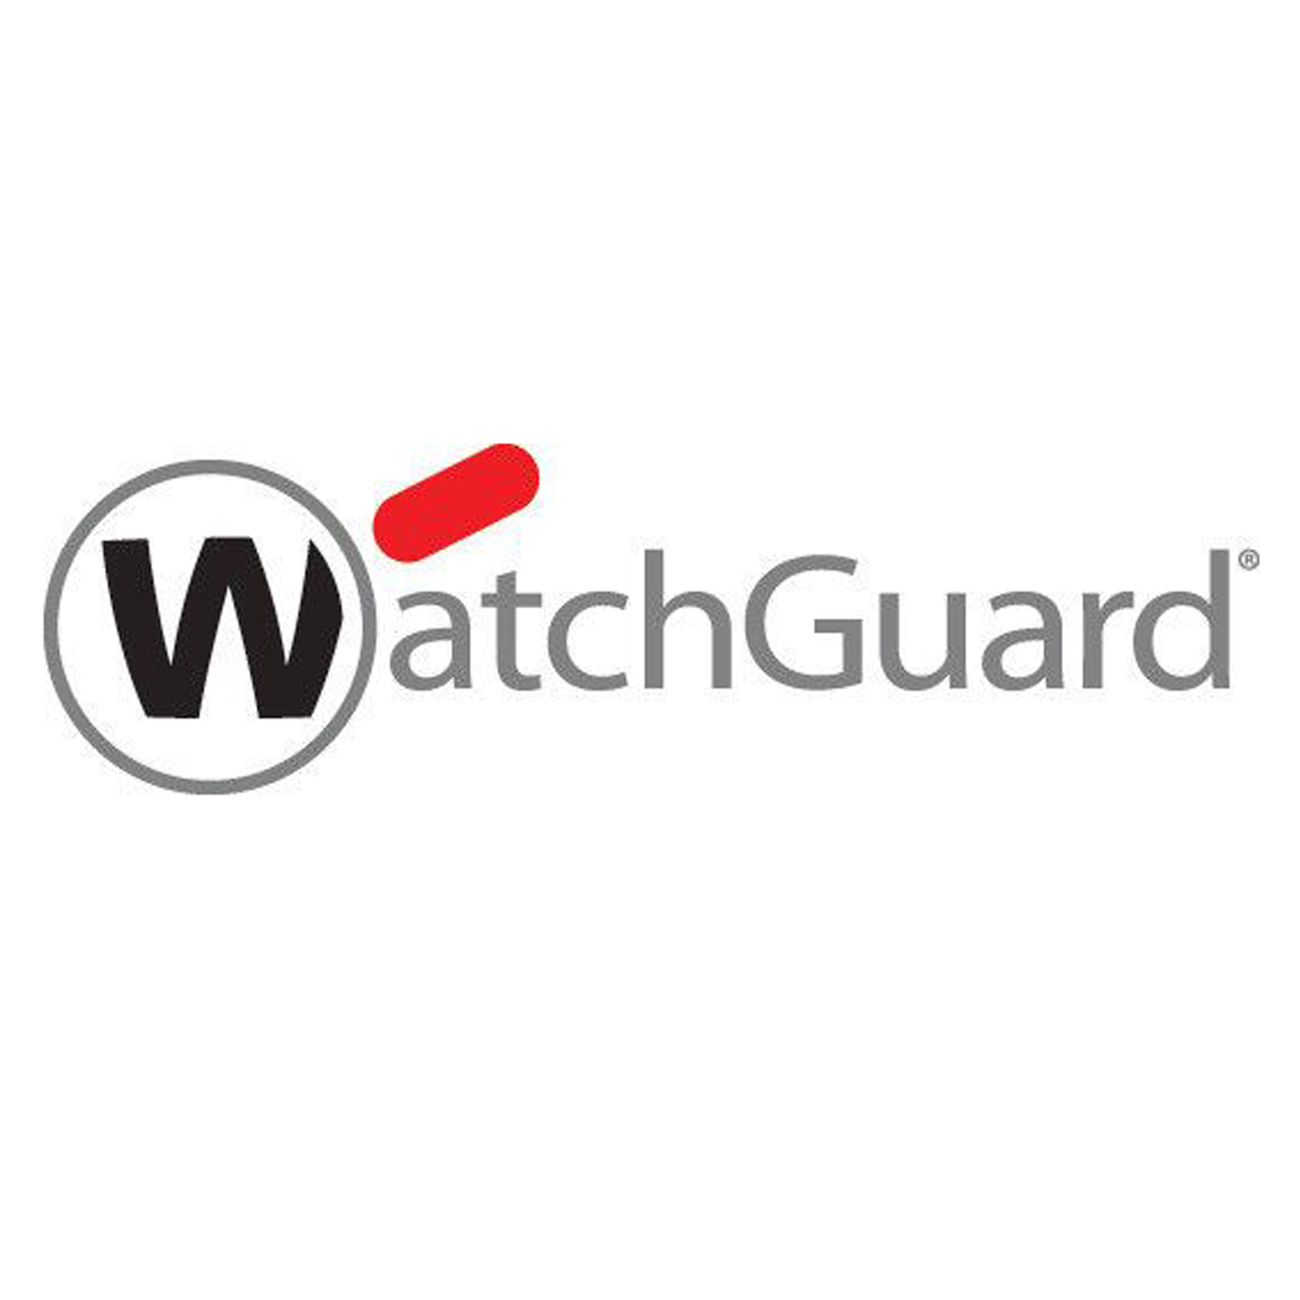 Watchguard WGCXL693, Software Lizenzen, Comp. Trade In WGCXL693 (BILD1)